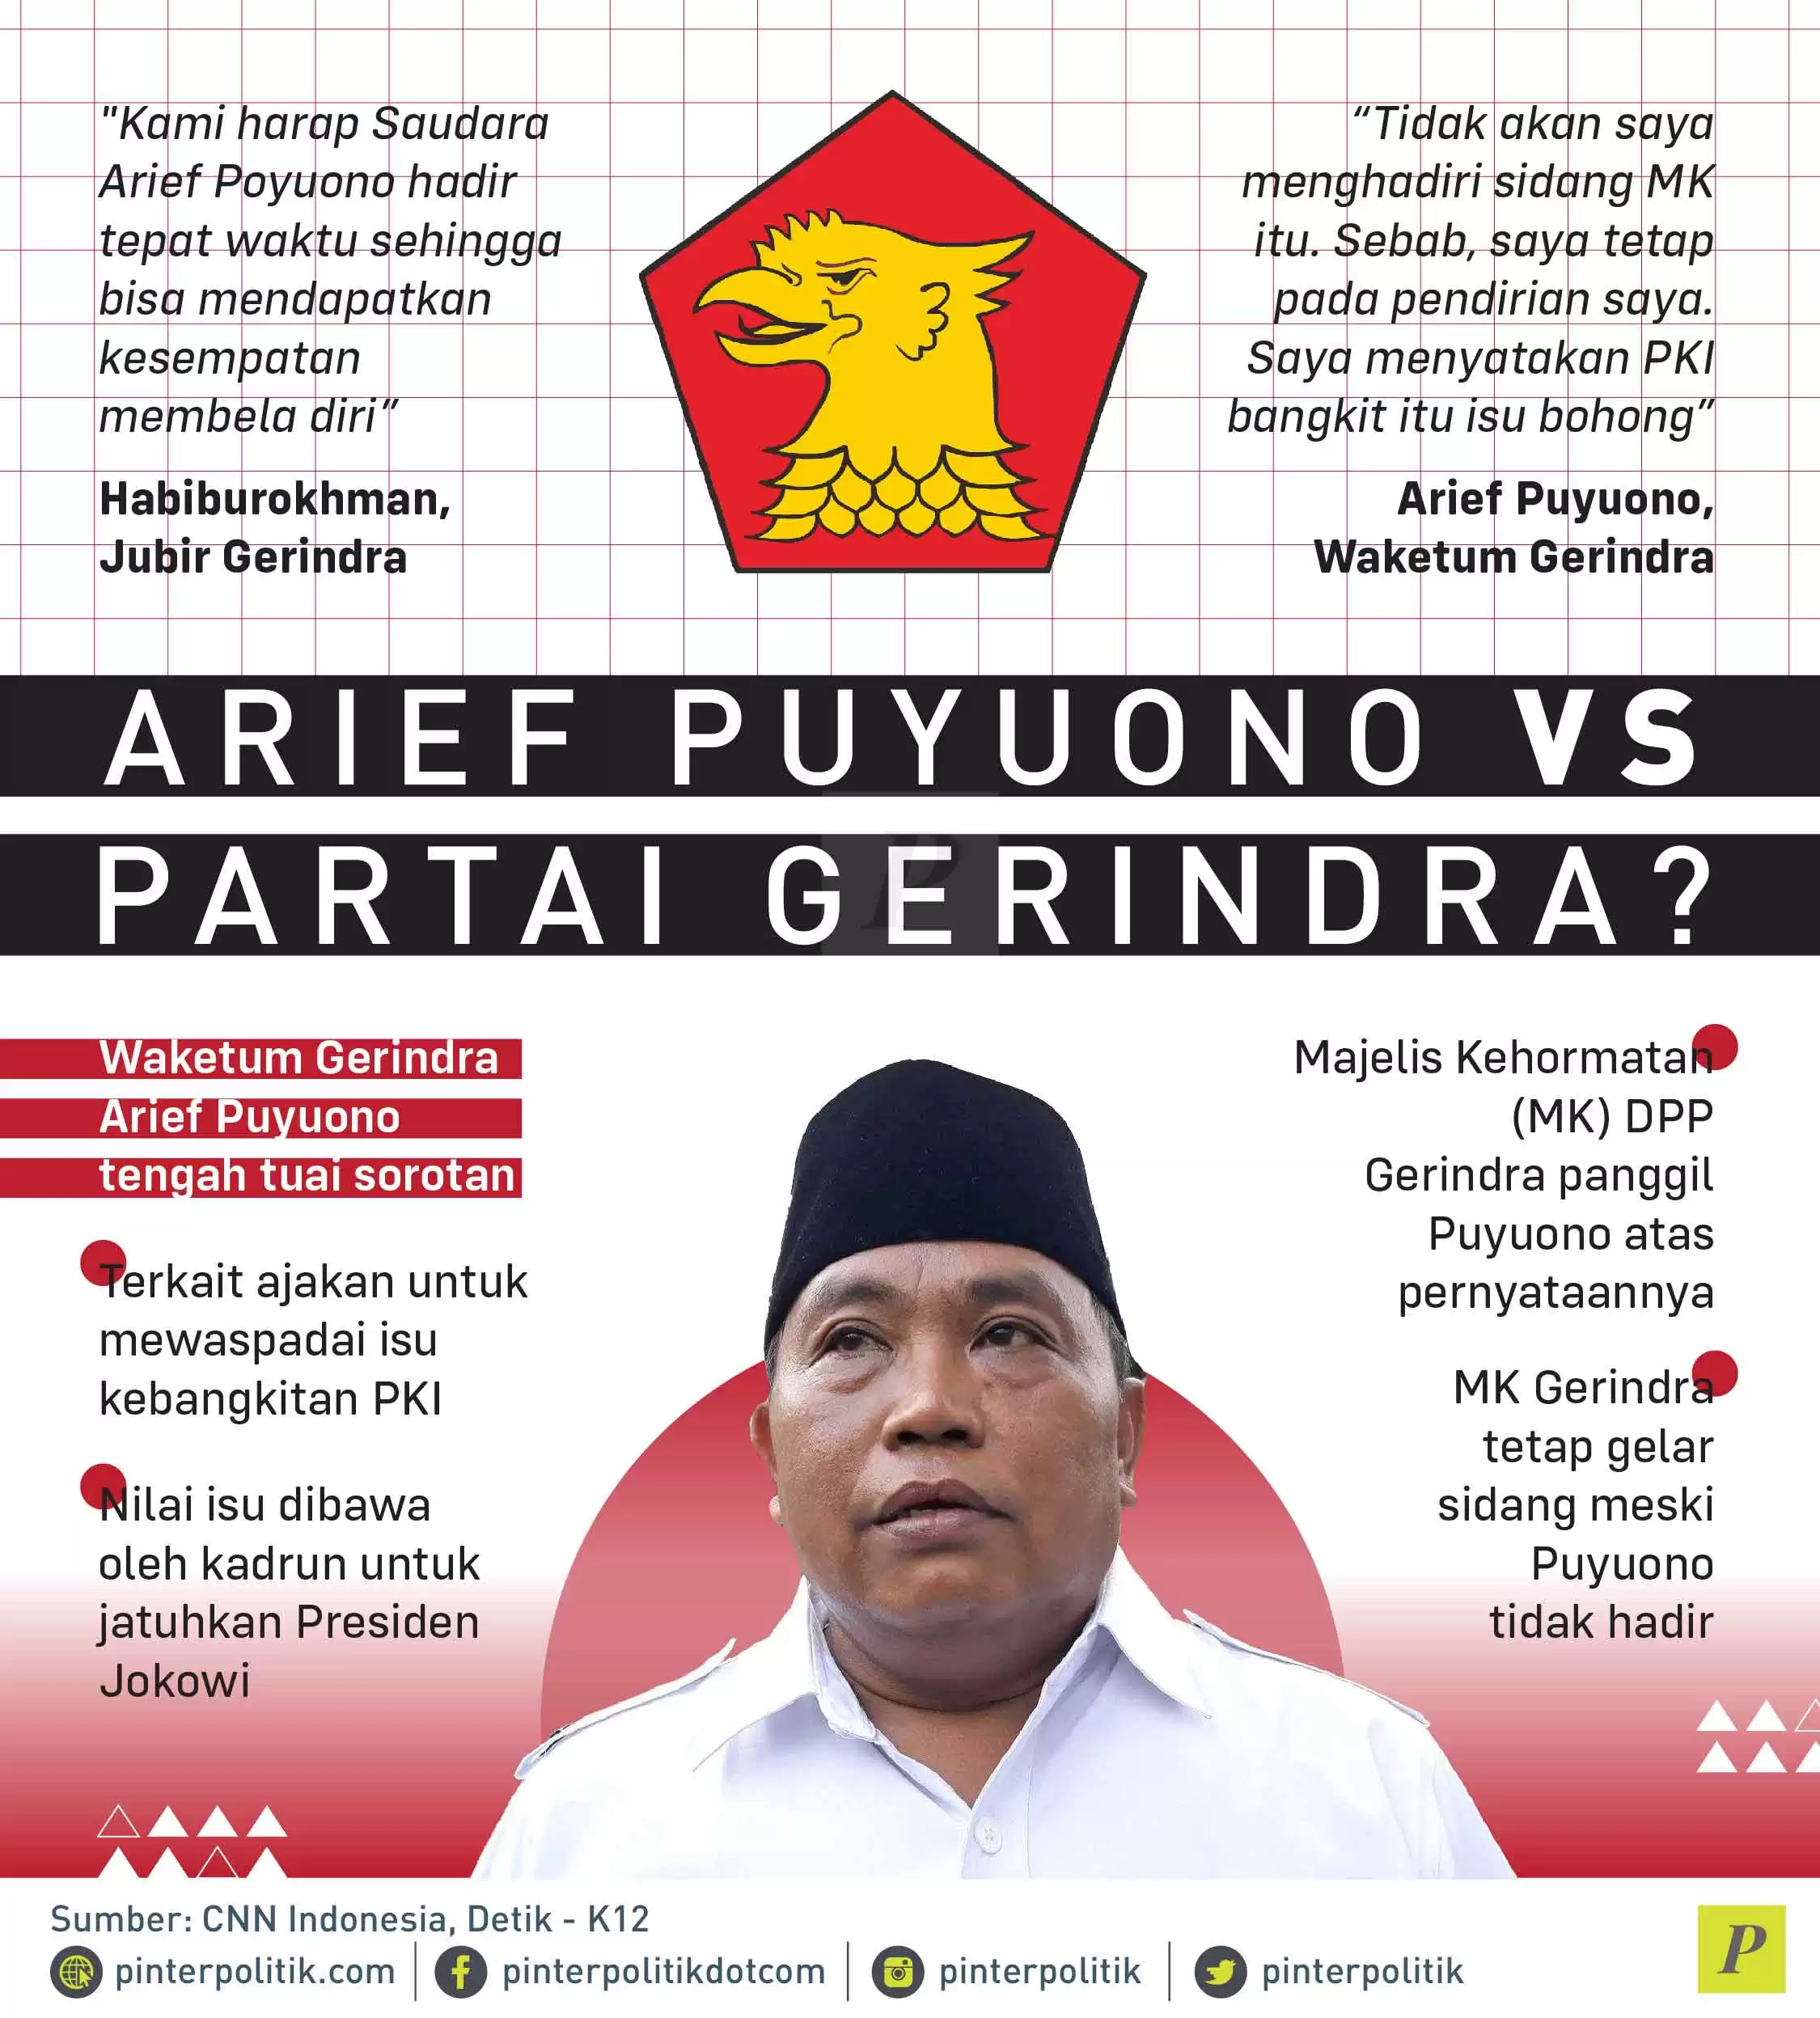 Arief Puyono Isu kebangkitan PKI